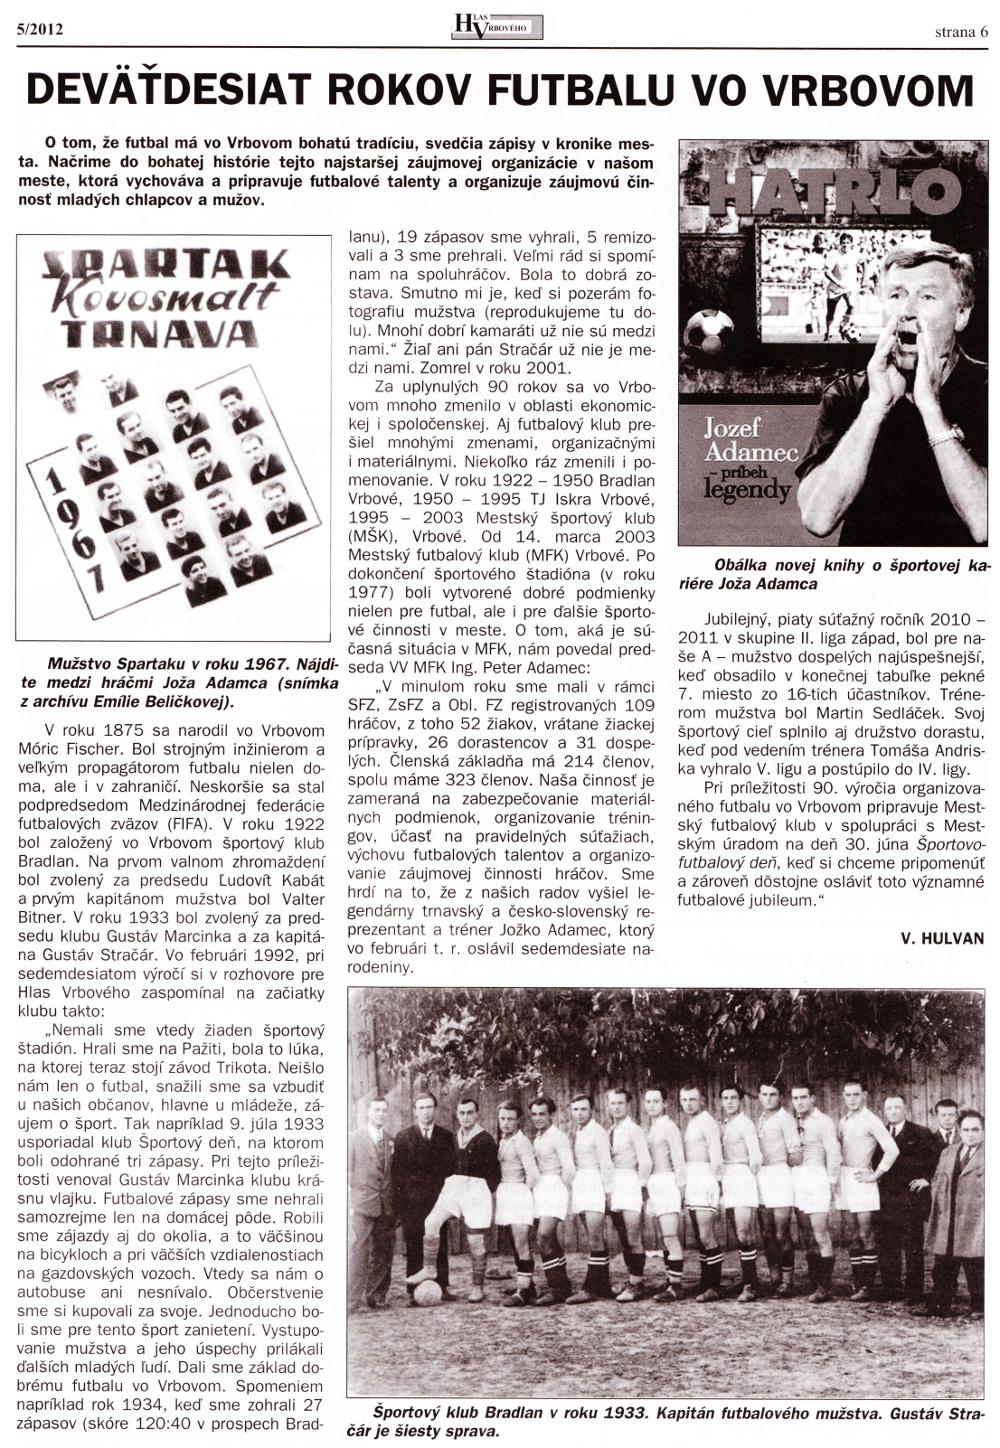 Hlas Vrbového 05/2012, strana 6